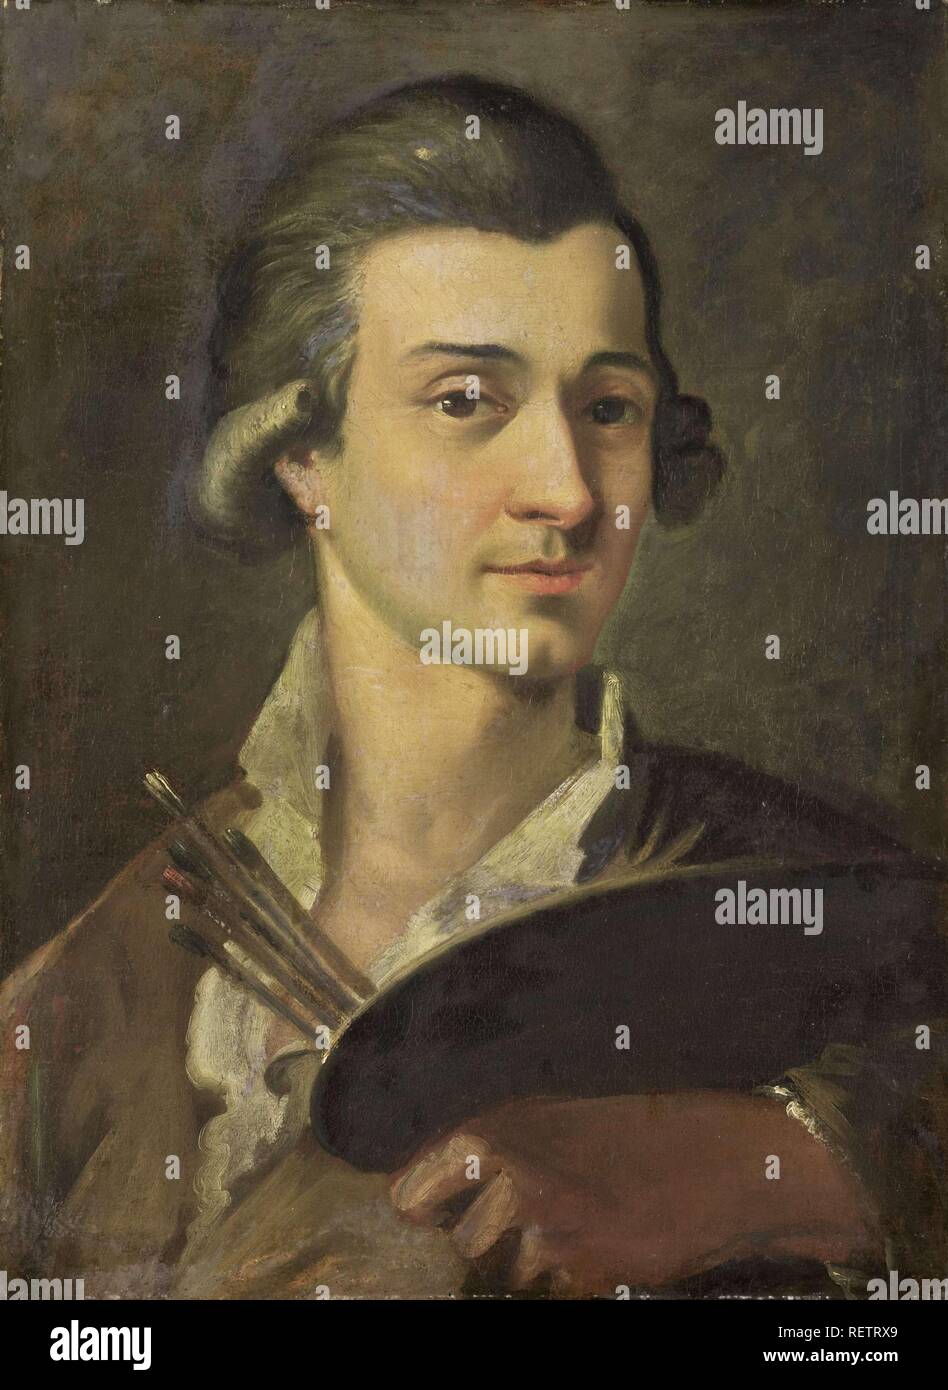 Portrait of a Painter. Dating: 1700 - 1799. Place: Noord-Italië. Measurements: h 50.1 cm × w 37.2 cm × t 3.3 cm; d 5.3 cm. Museum: Rijksmuseum, Amsterdam. Stock Photo